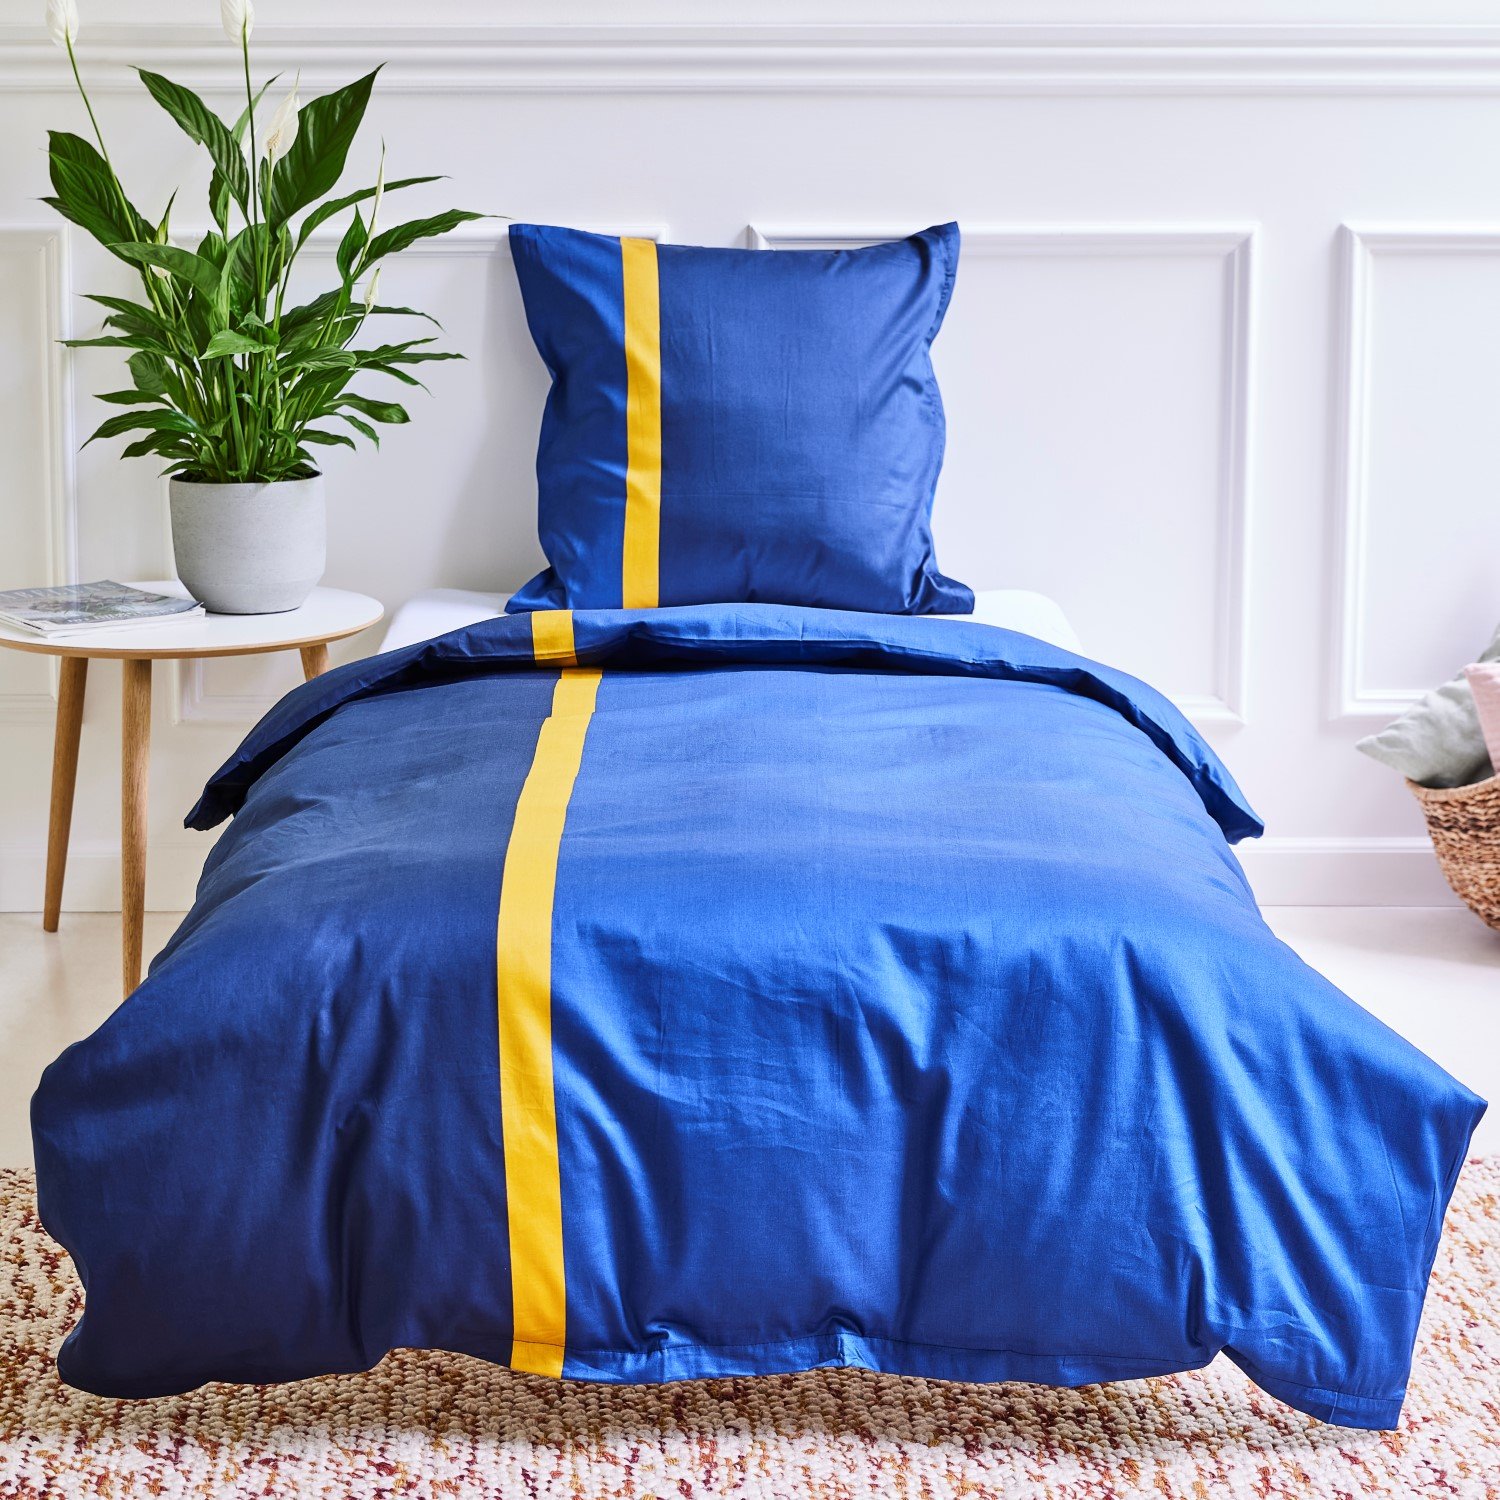 visdom valgfri Adskillelse Fantastisk lækkert sengetøj i 100% bomuldssatin fra bySKAGEN